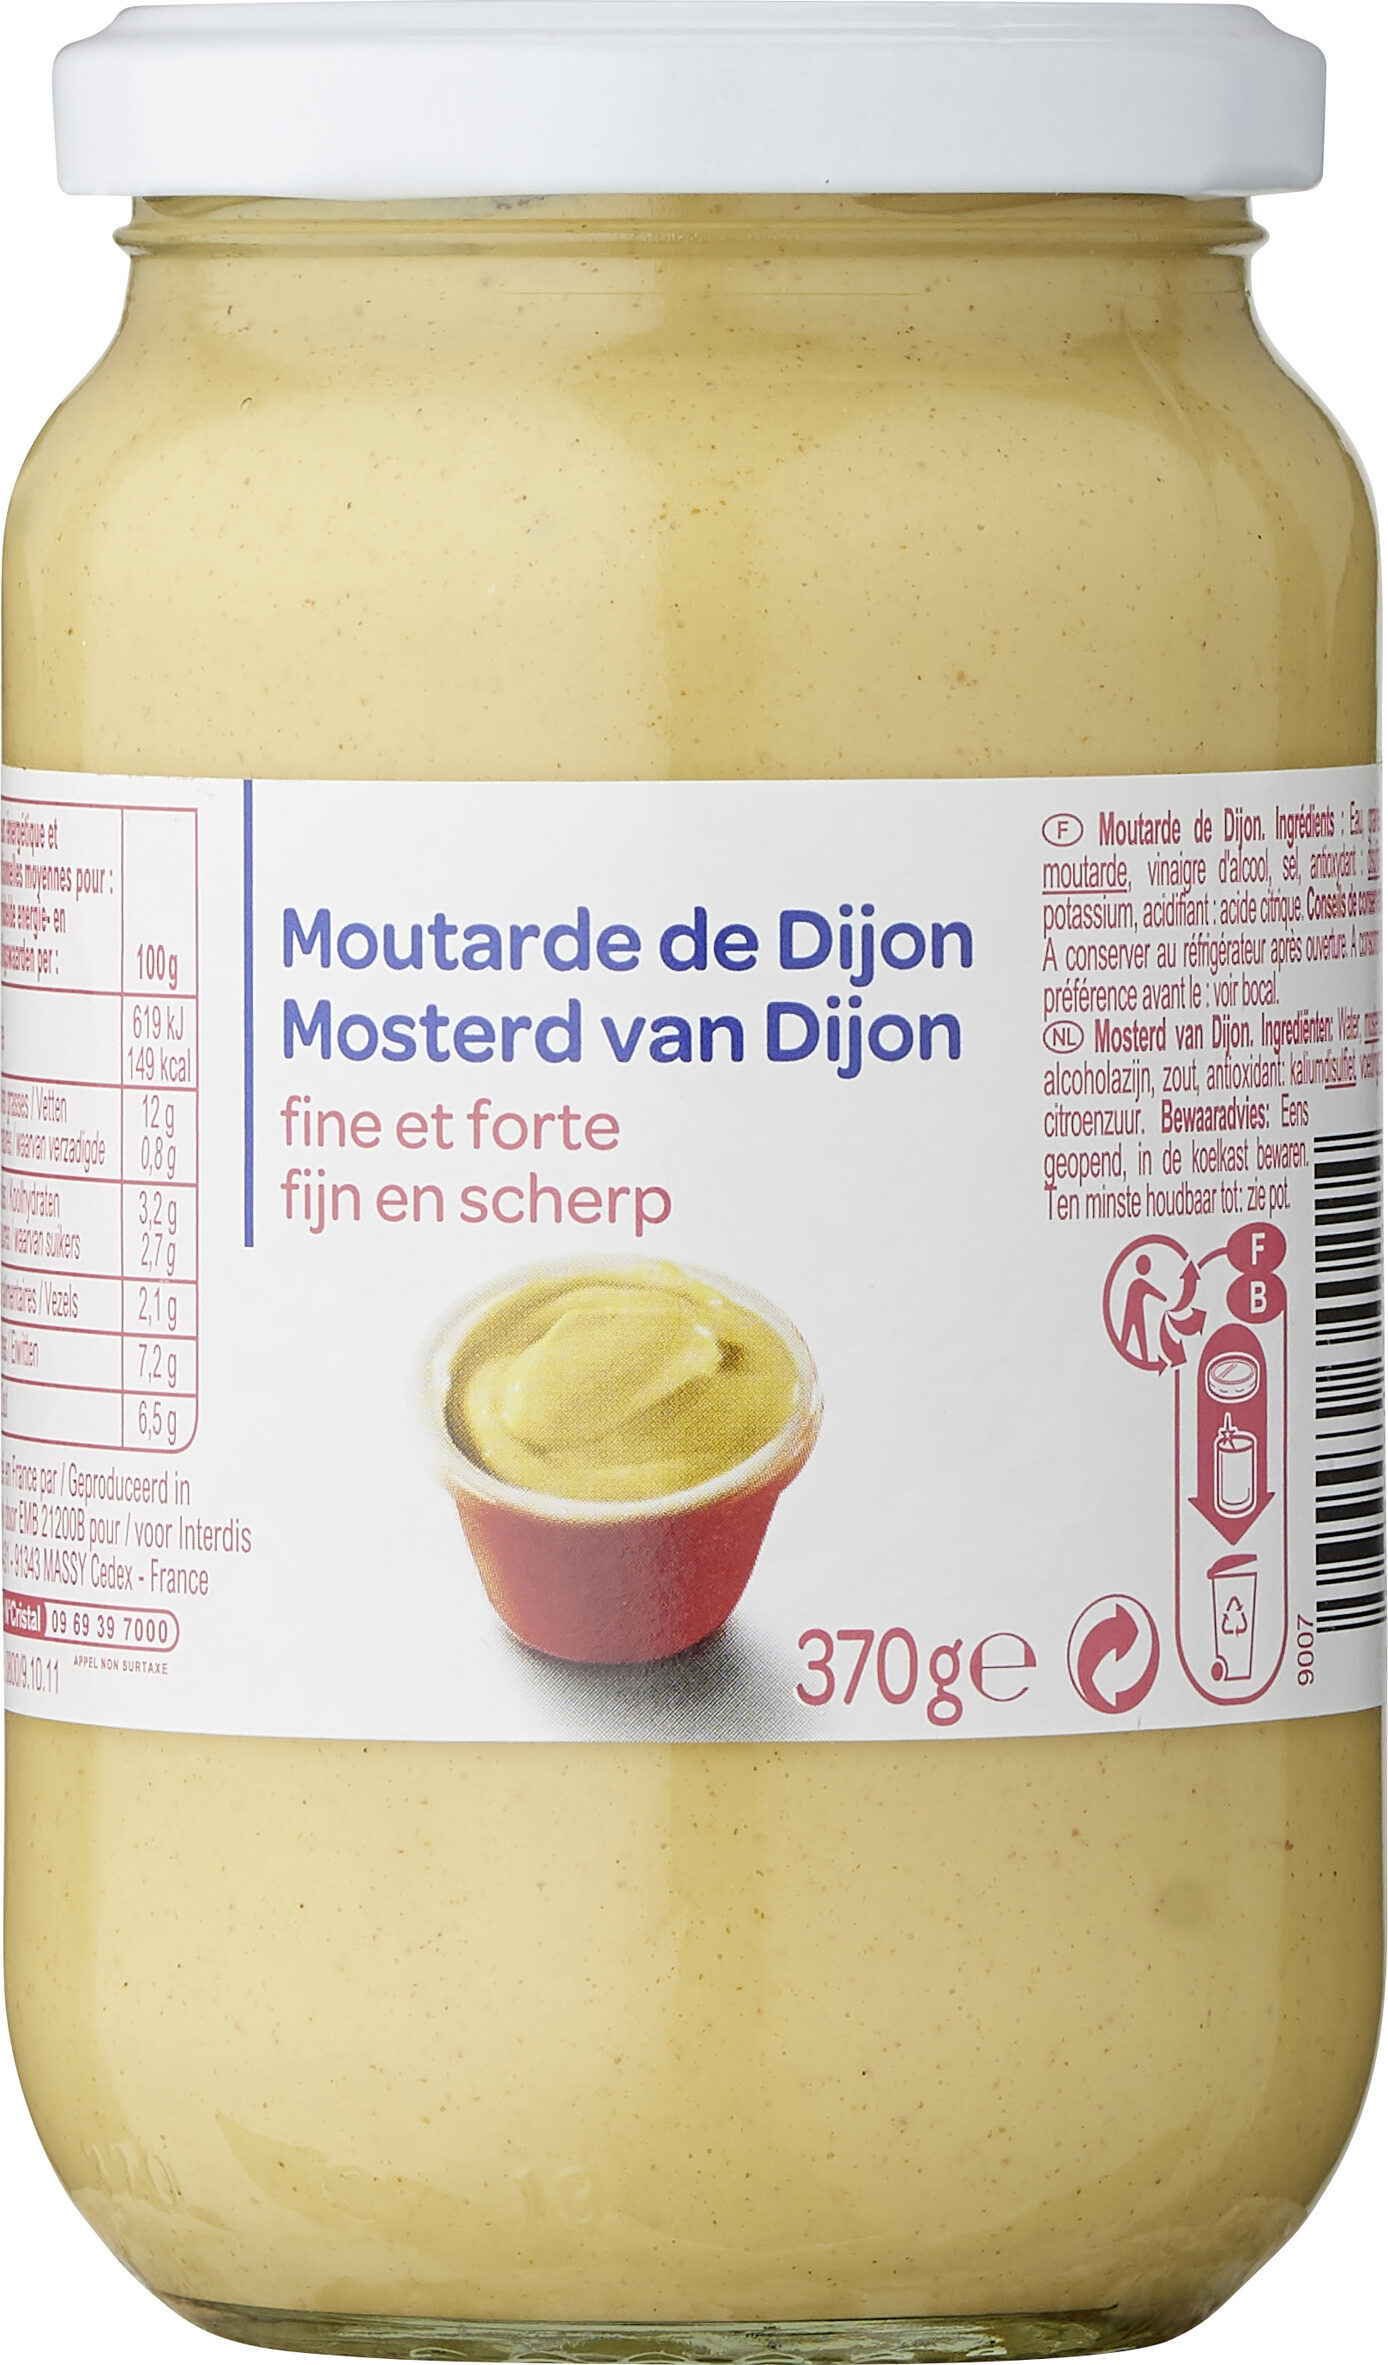 Moutarde de Dijon - Producto - fr